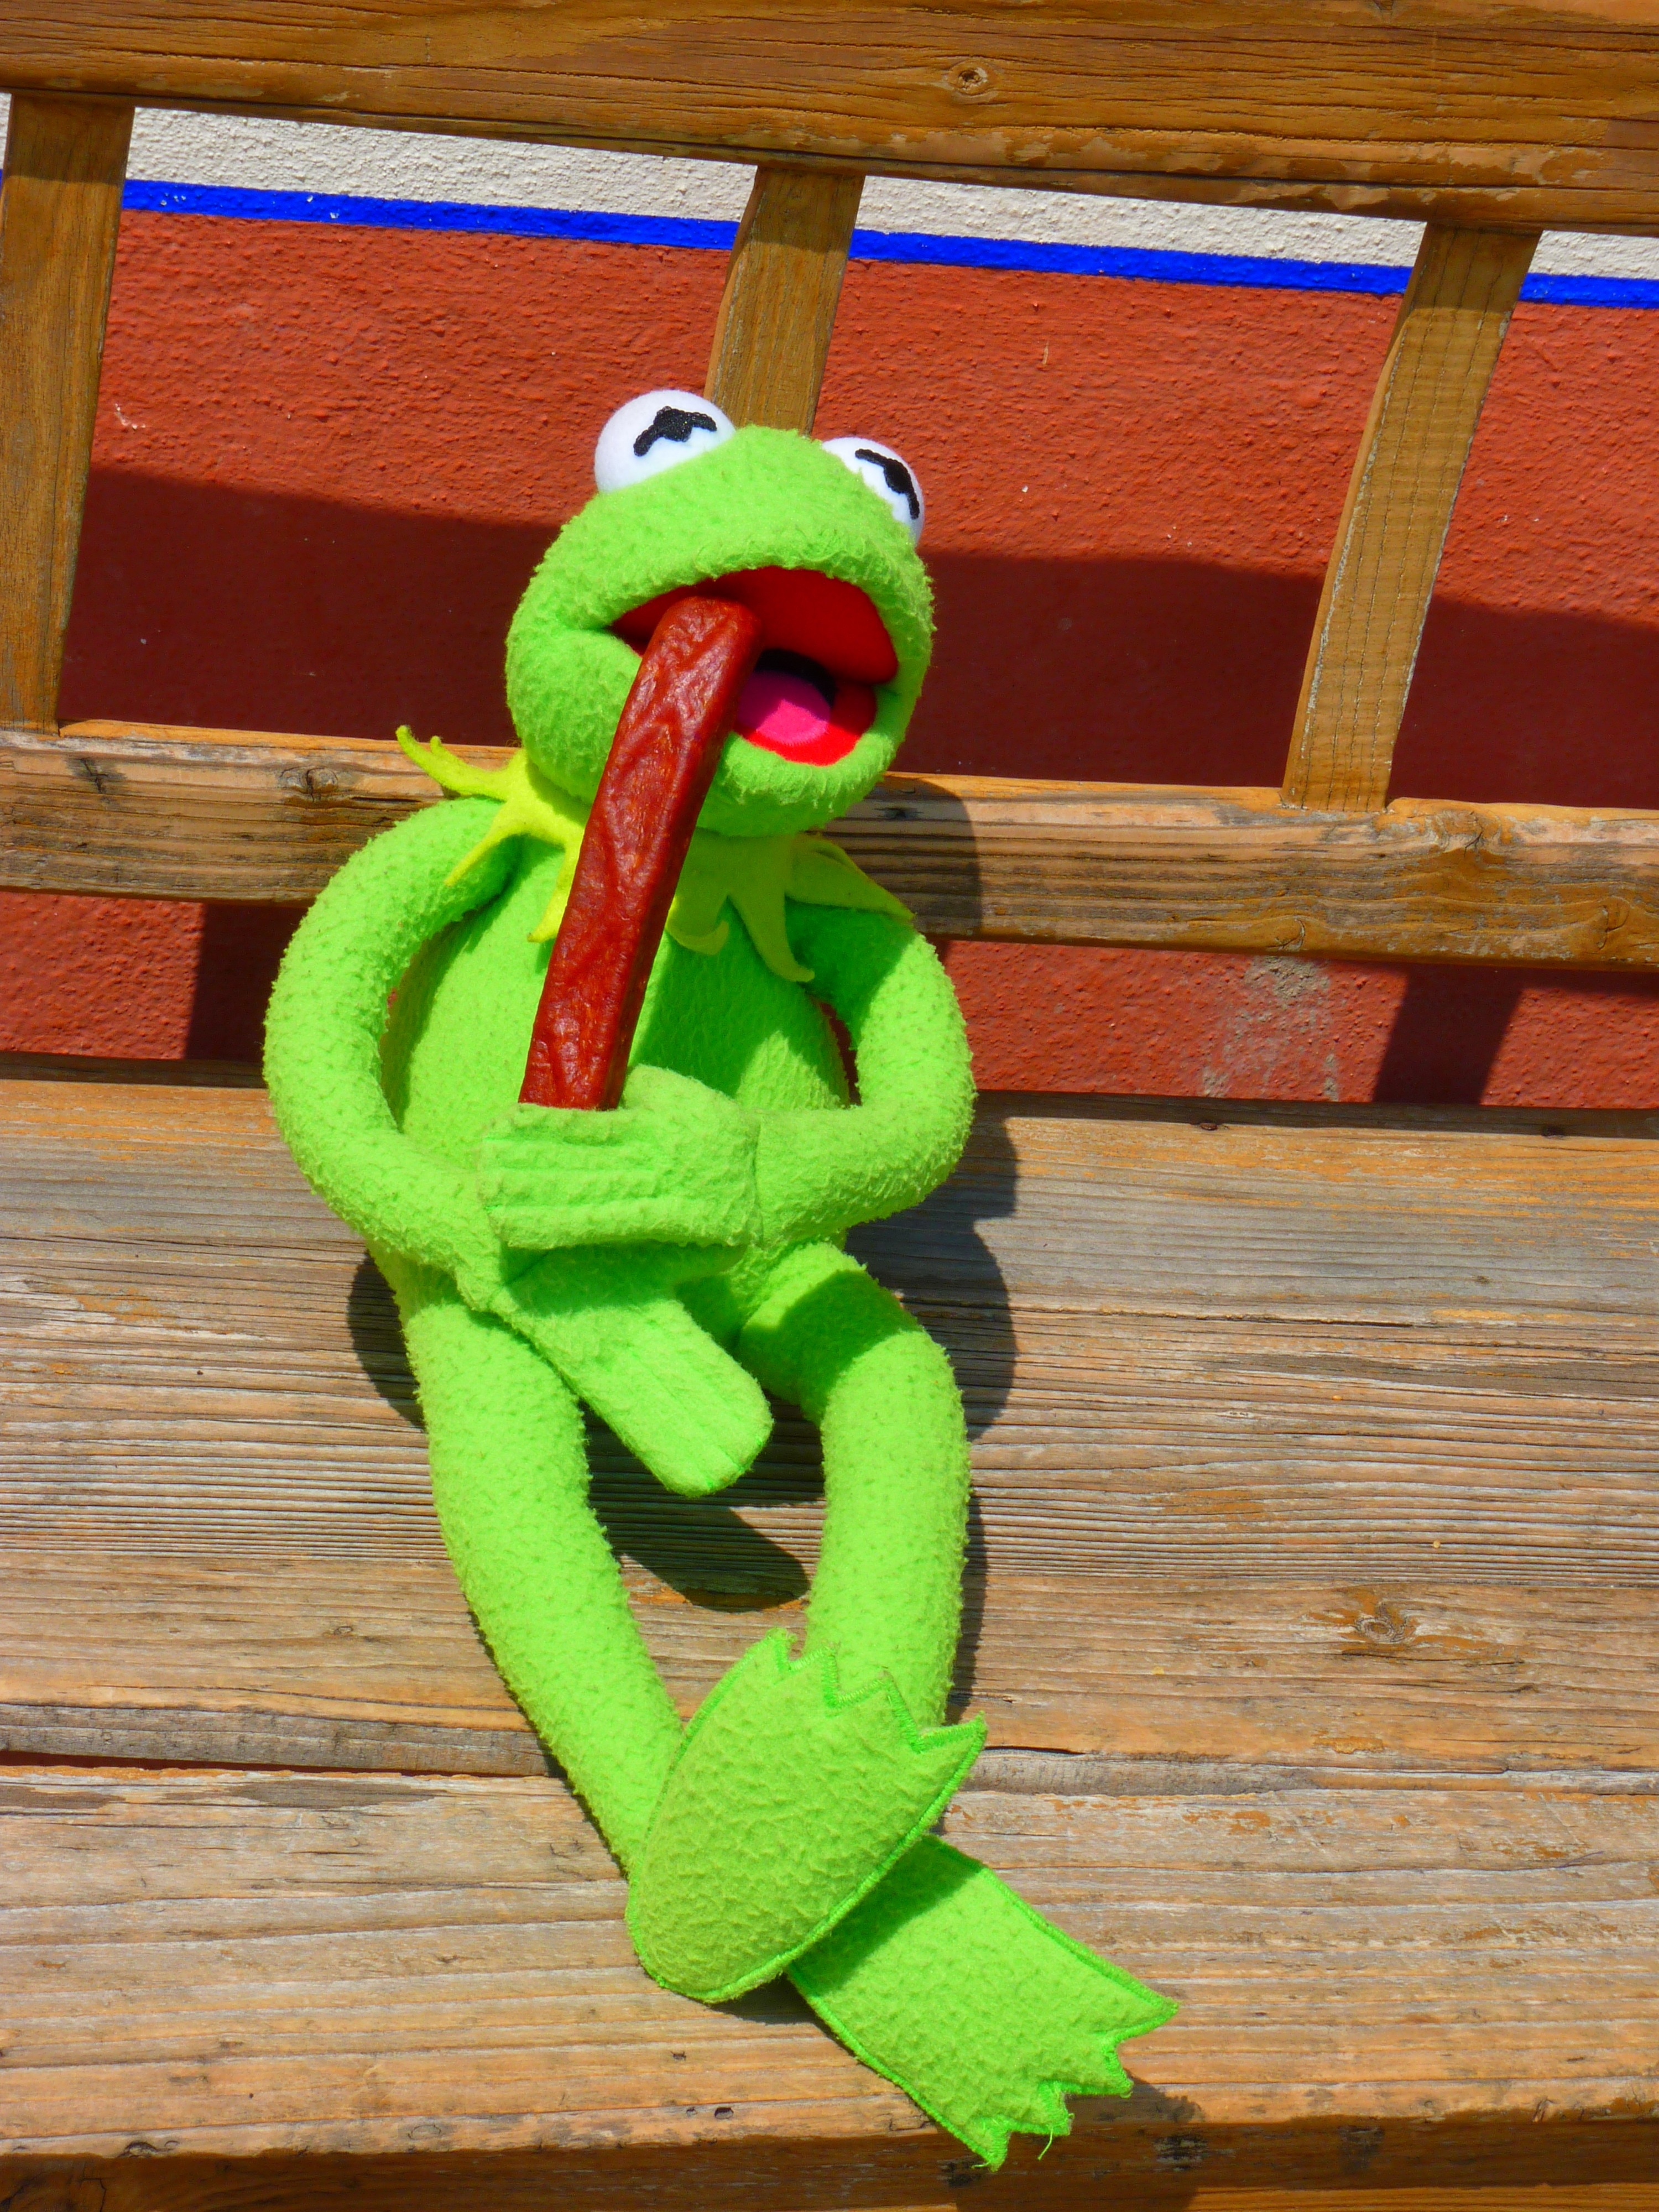 kermit the frog plush toy